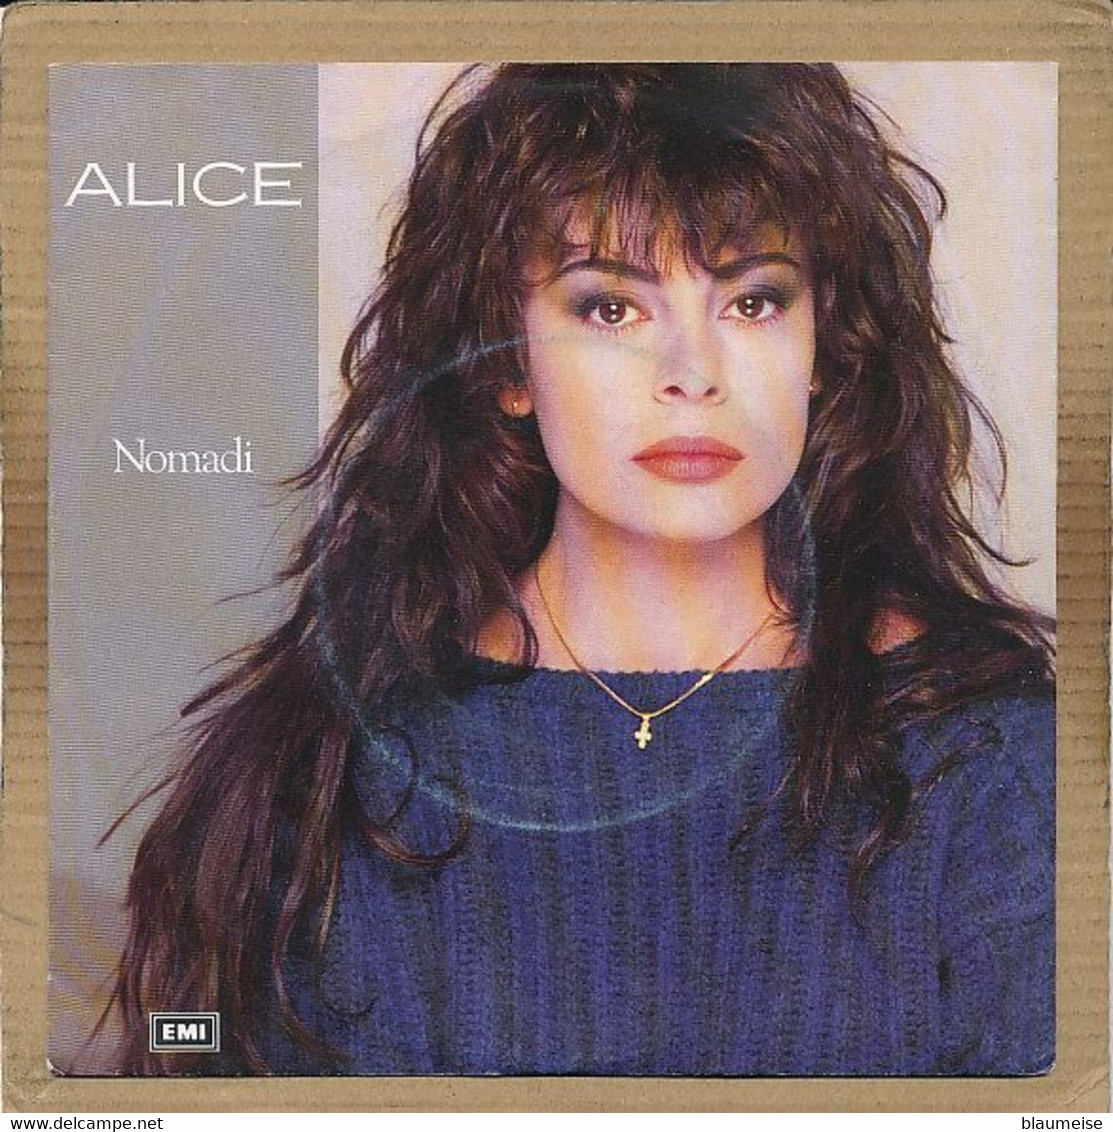 7" Single, Alice - Nomadi - Disco, Pop